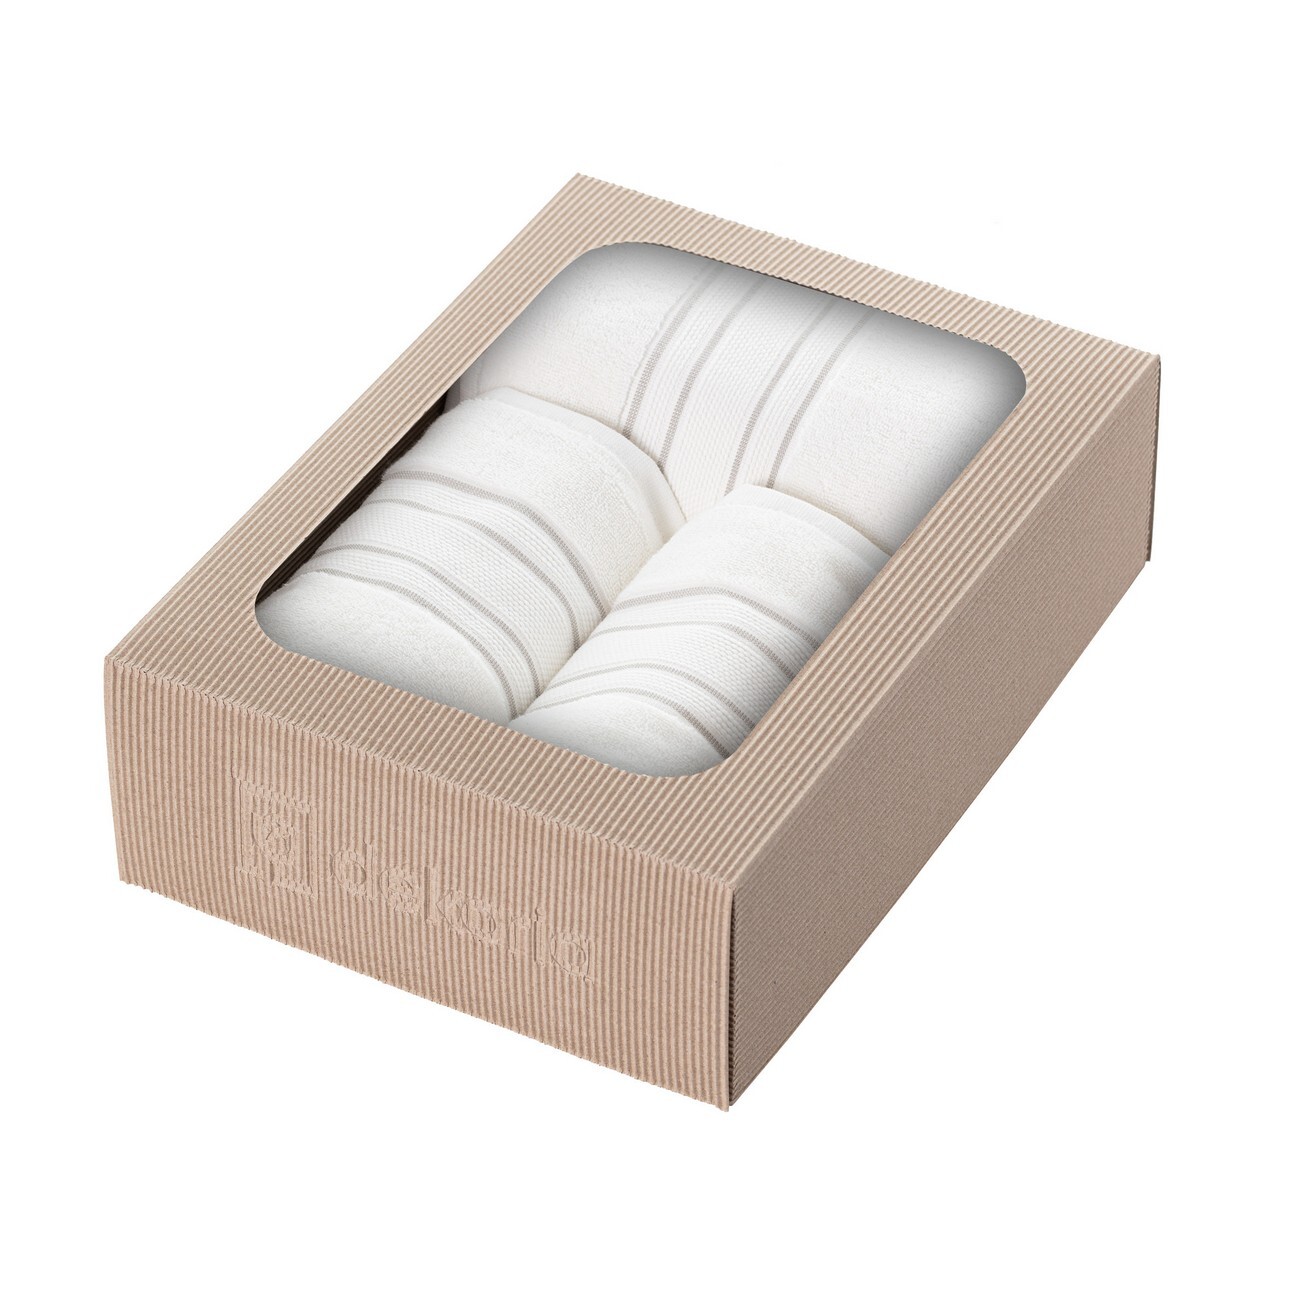 Handtuch-Set Gunnar 3 Stck. creamy white grey, 50 x 90 / 70 x 140 cm günstig online kaufen